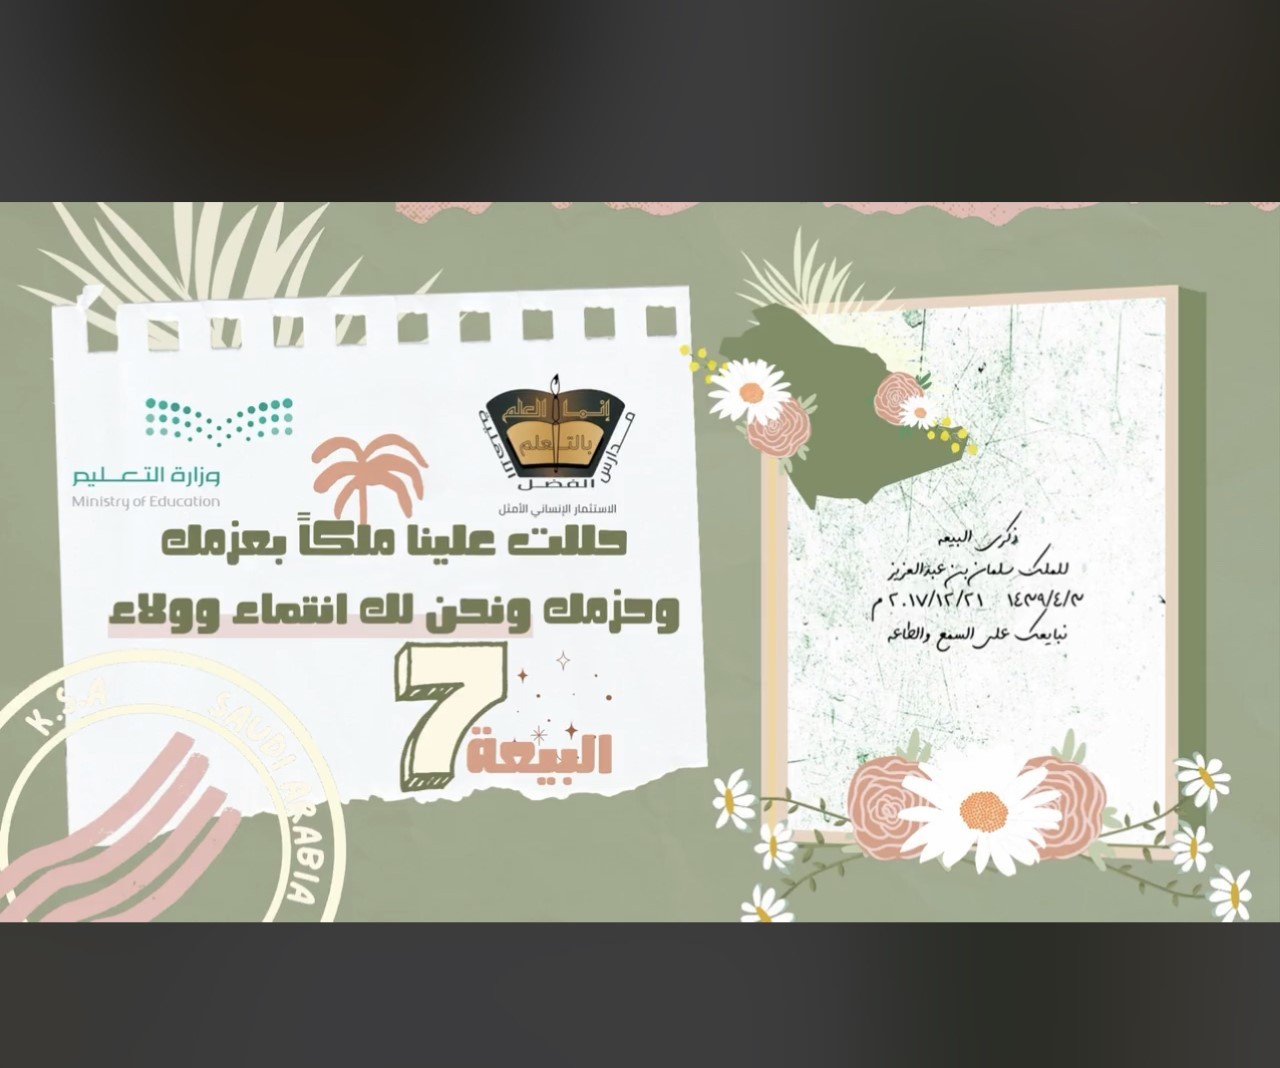 مكتب تعليم غرب مكة يحتفي بالذكرى السابعة للبيعة